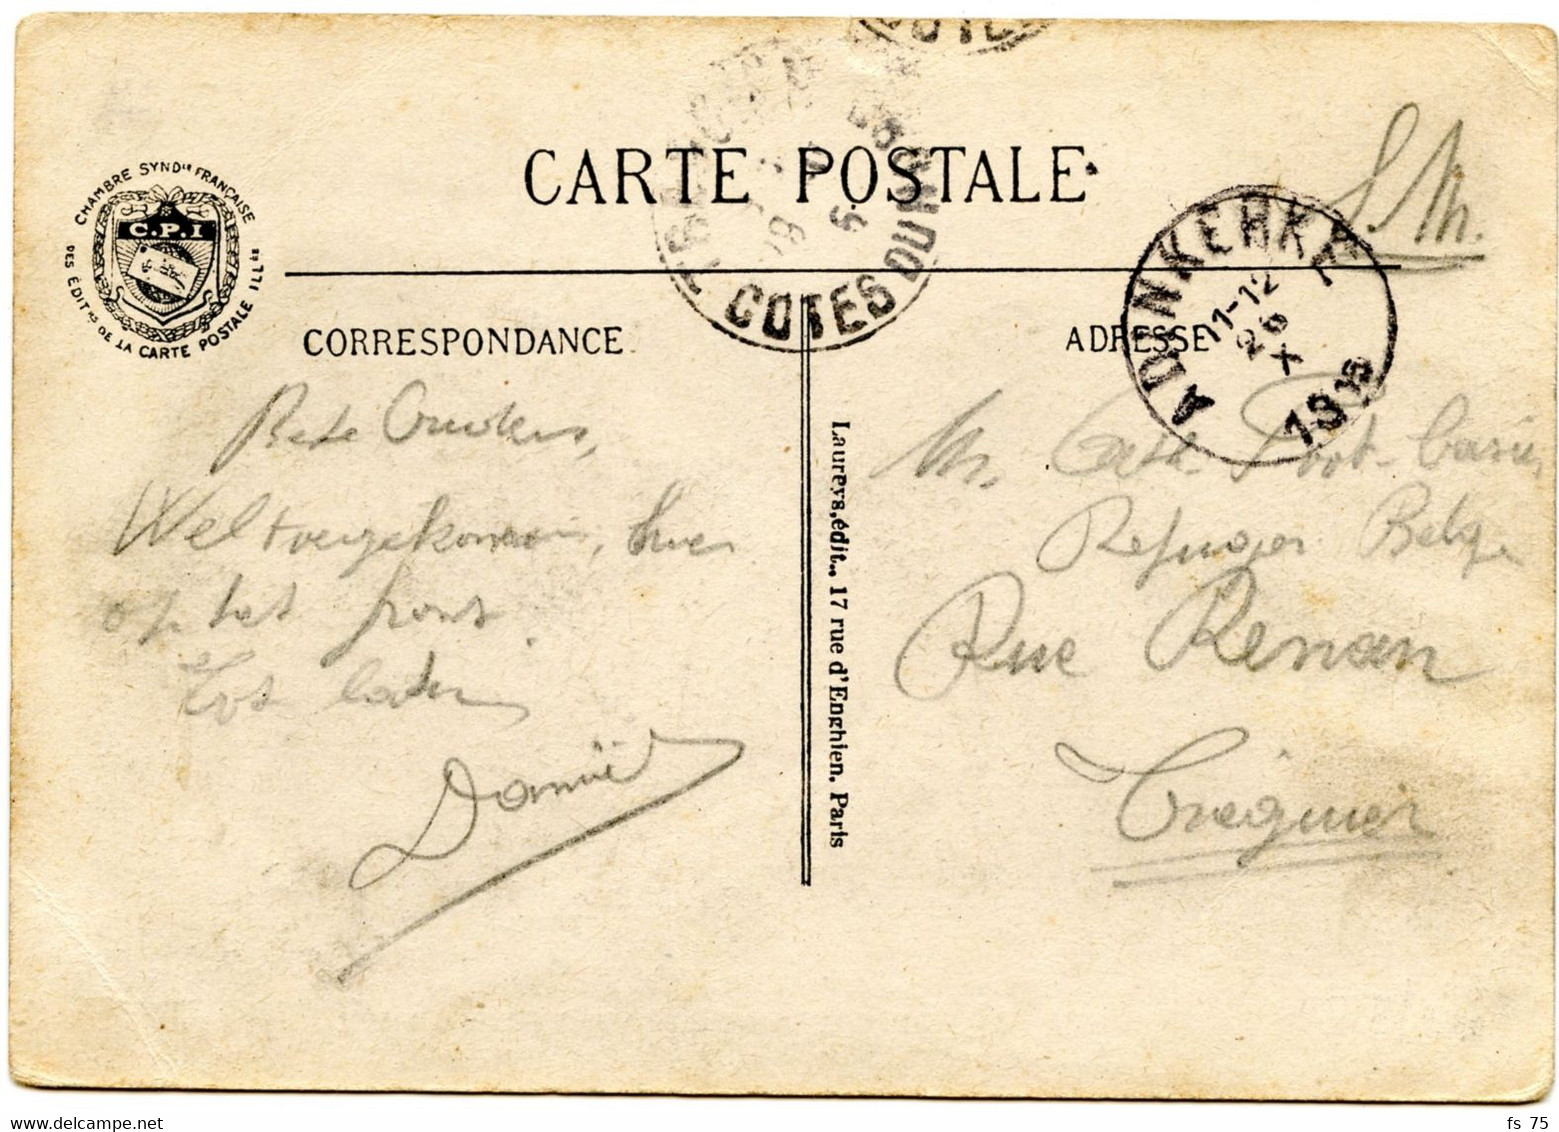 BELGIQUE - SIMPLE CERCLE ADINKERKE SUR CARTE POSTALE EN FRANCHISE, 1915 - Zone Non Occupée